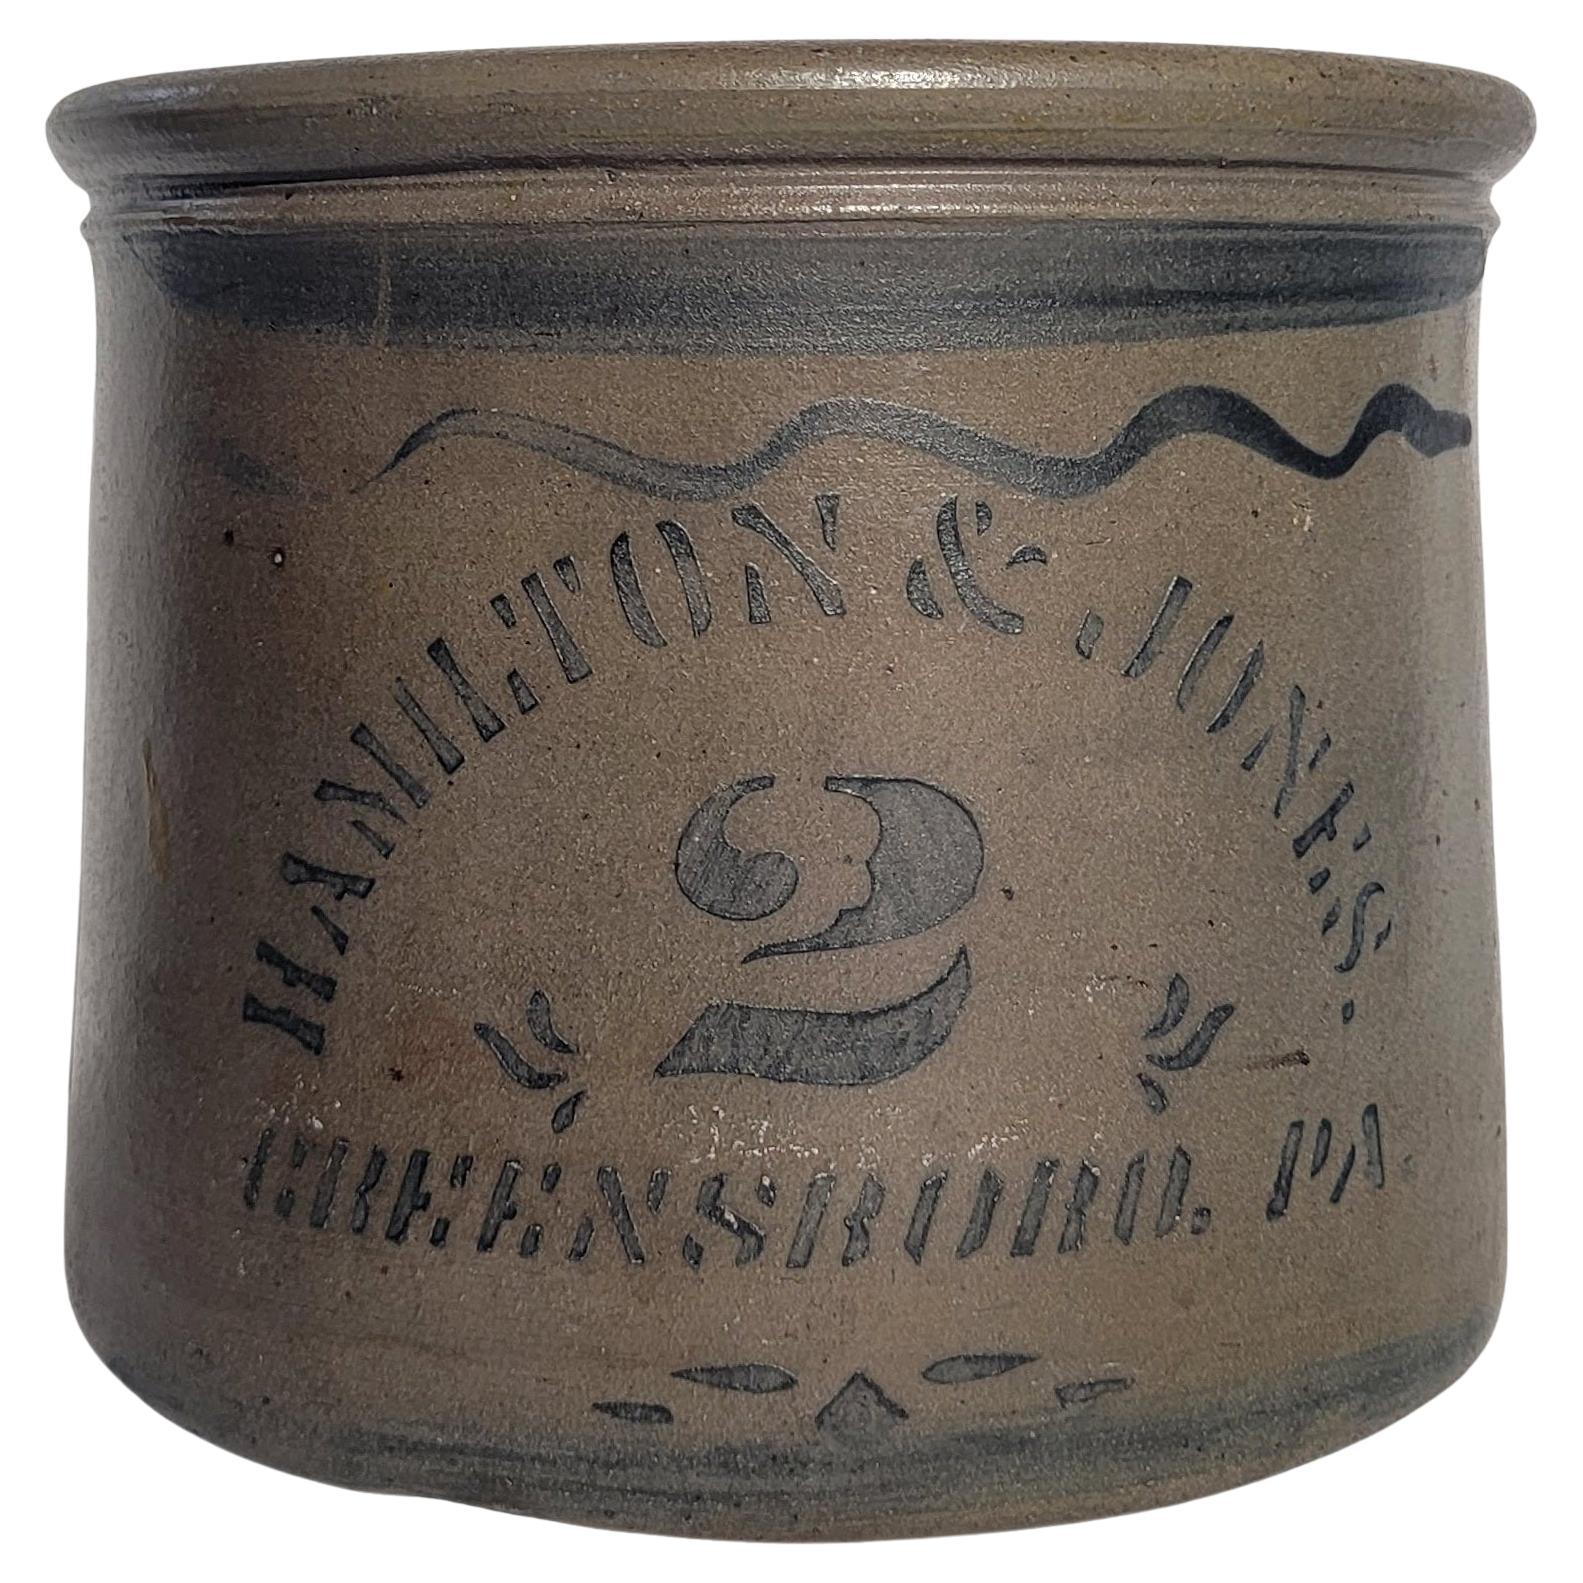 Butter Crock 2 Gallon signé Hamilton & Jones, 19ème siècle